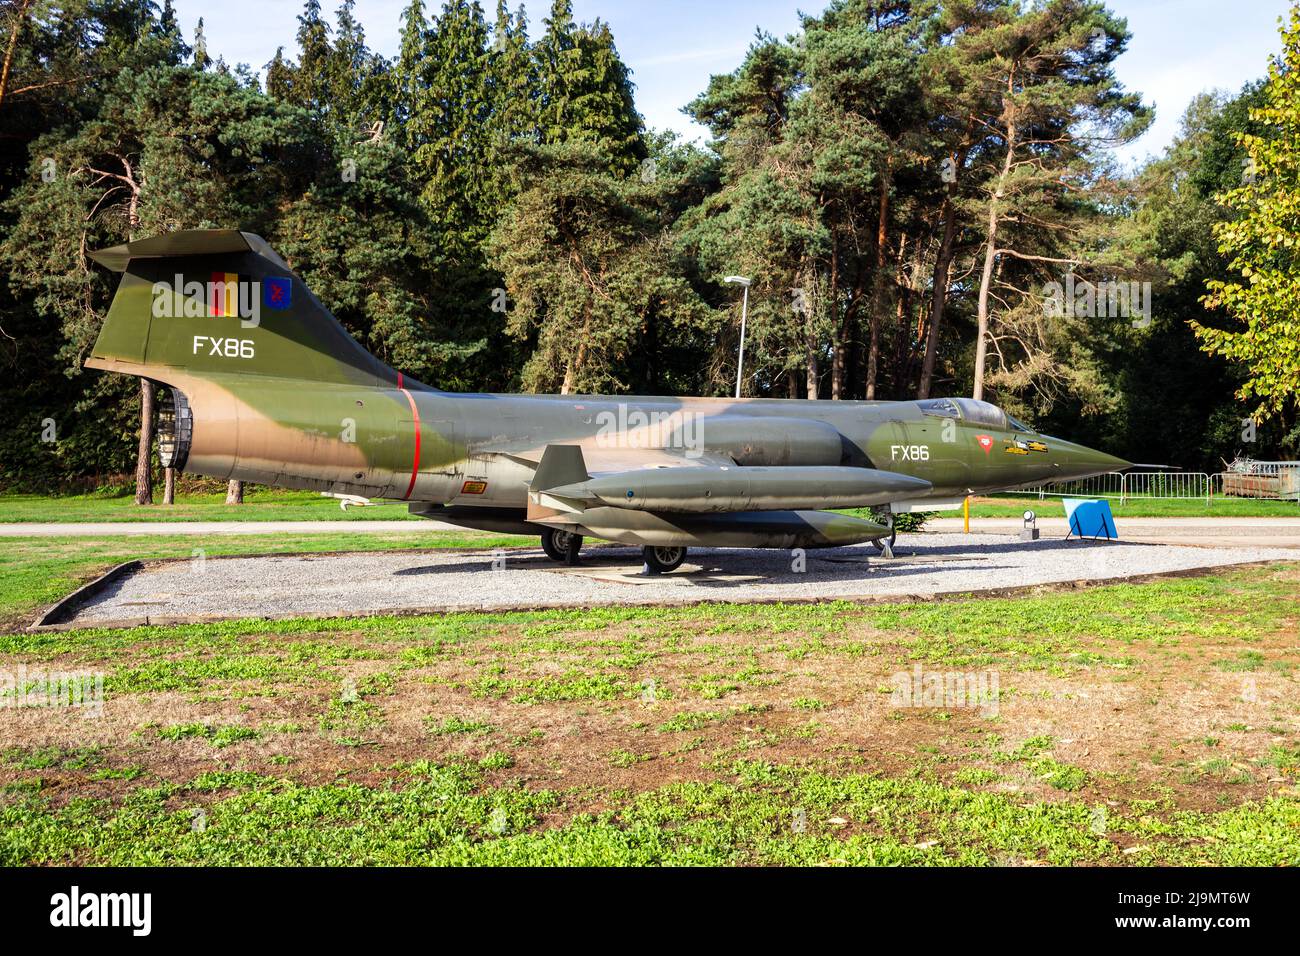 Exposition de vol de l'armée de l'air belge Lockheed F-104g Starfighter Fighter Fighter Preserved à la base aérienne de Kleine-Brogel. Belgique - 8 septembre 2018 Banque D'Images